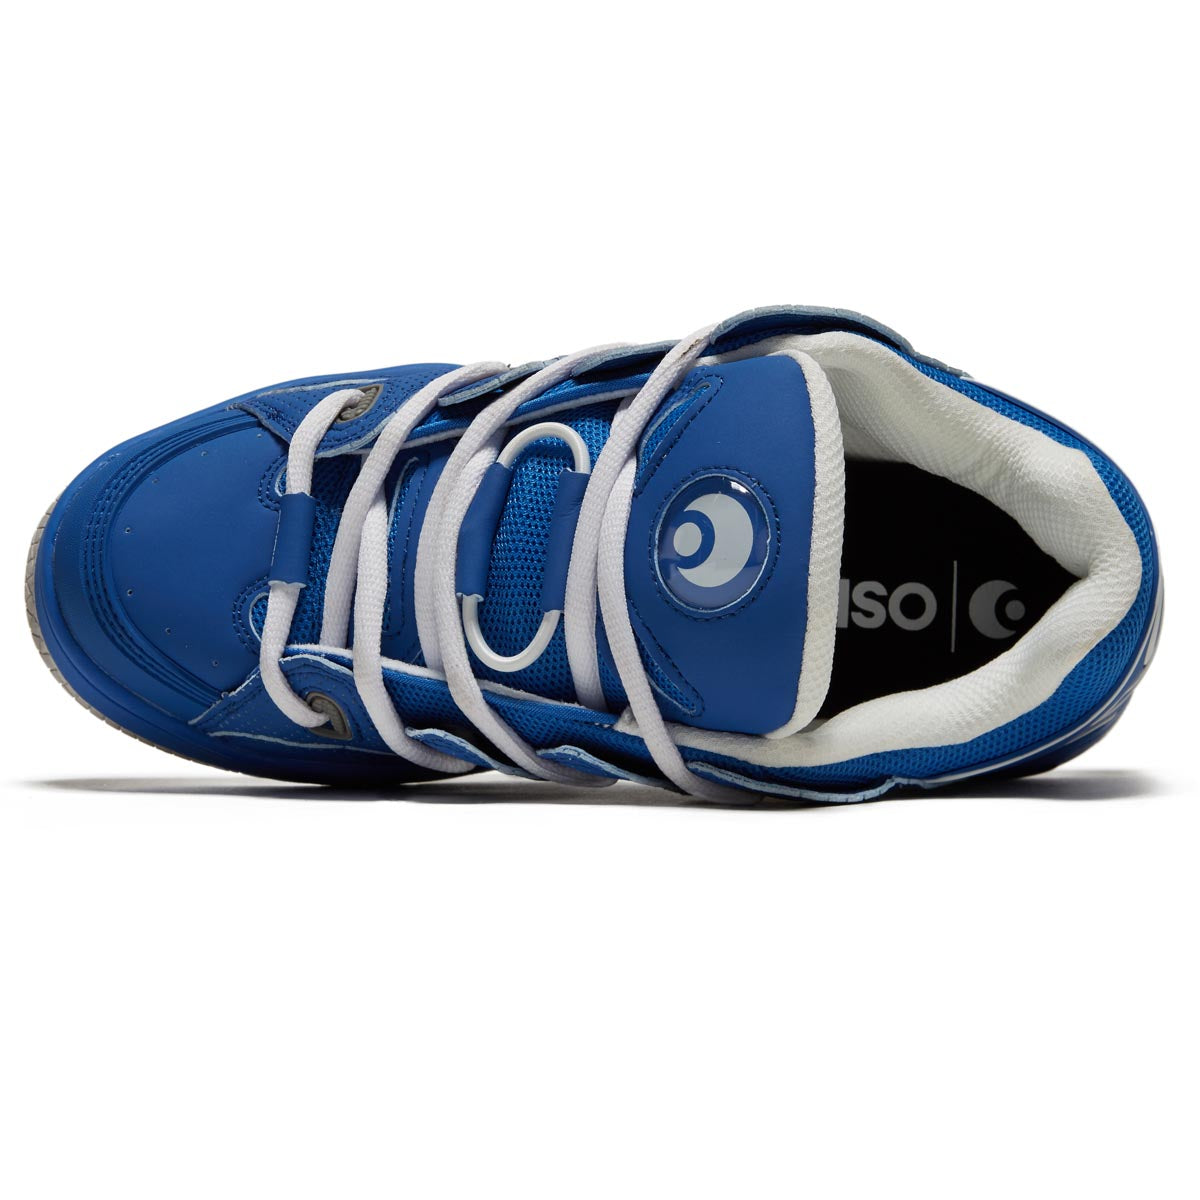 Osiris D3 OG Shoes - Blue/Grey/Black image 3